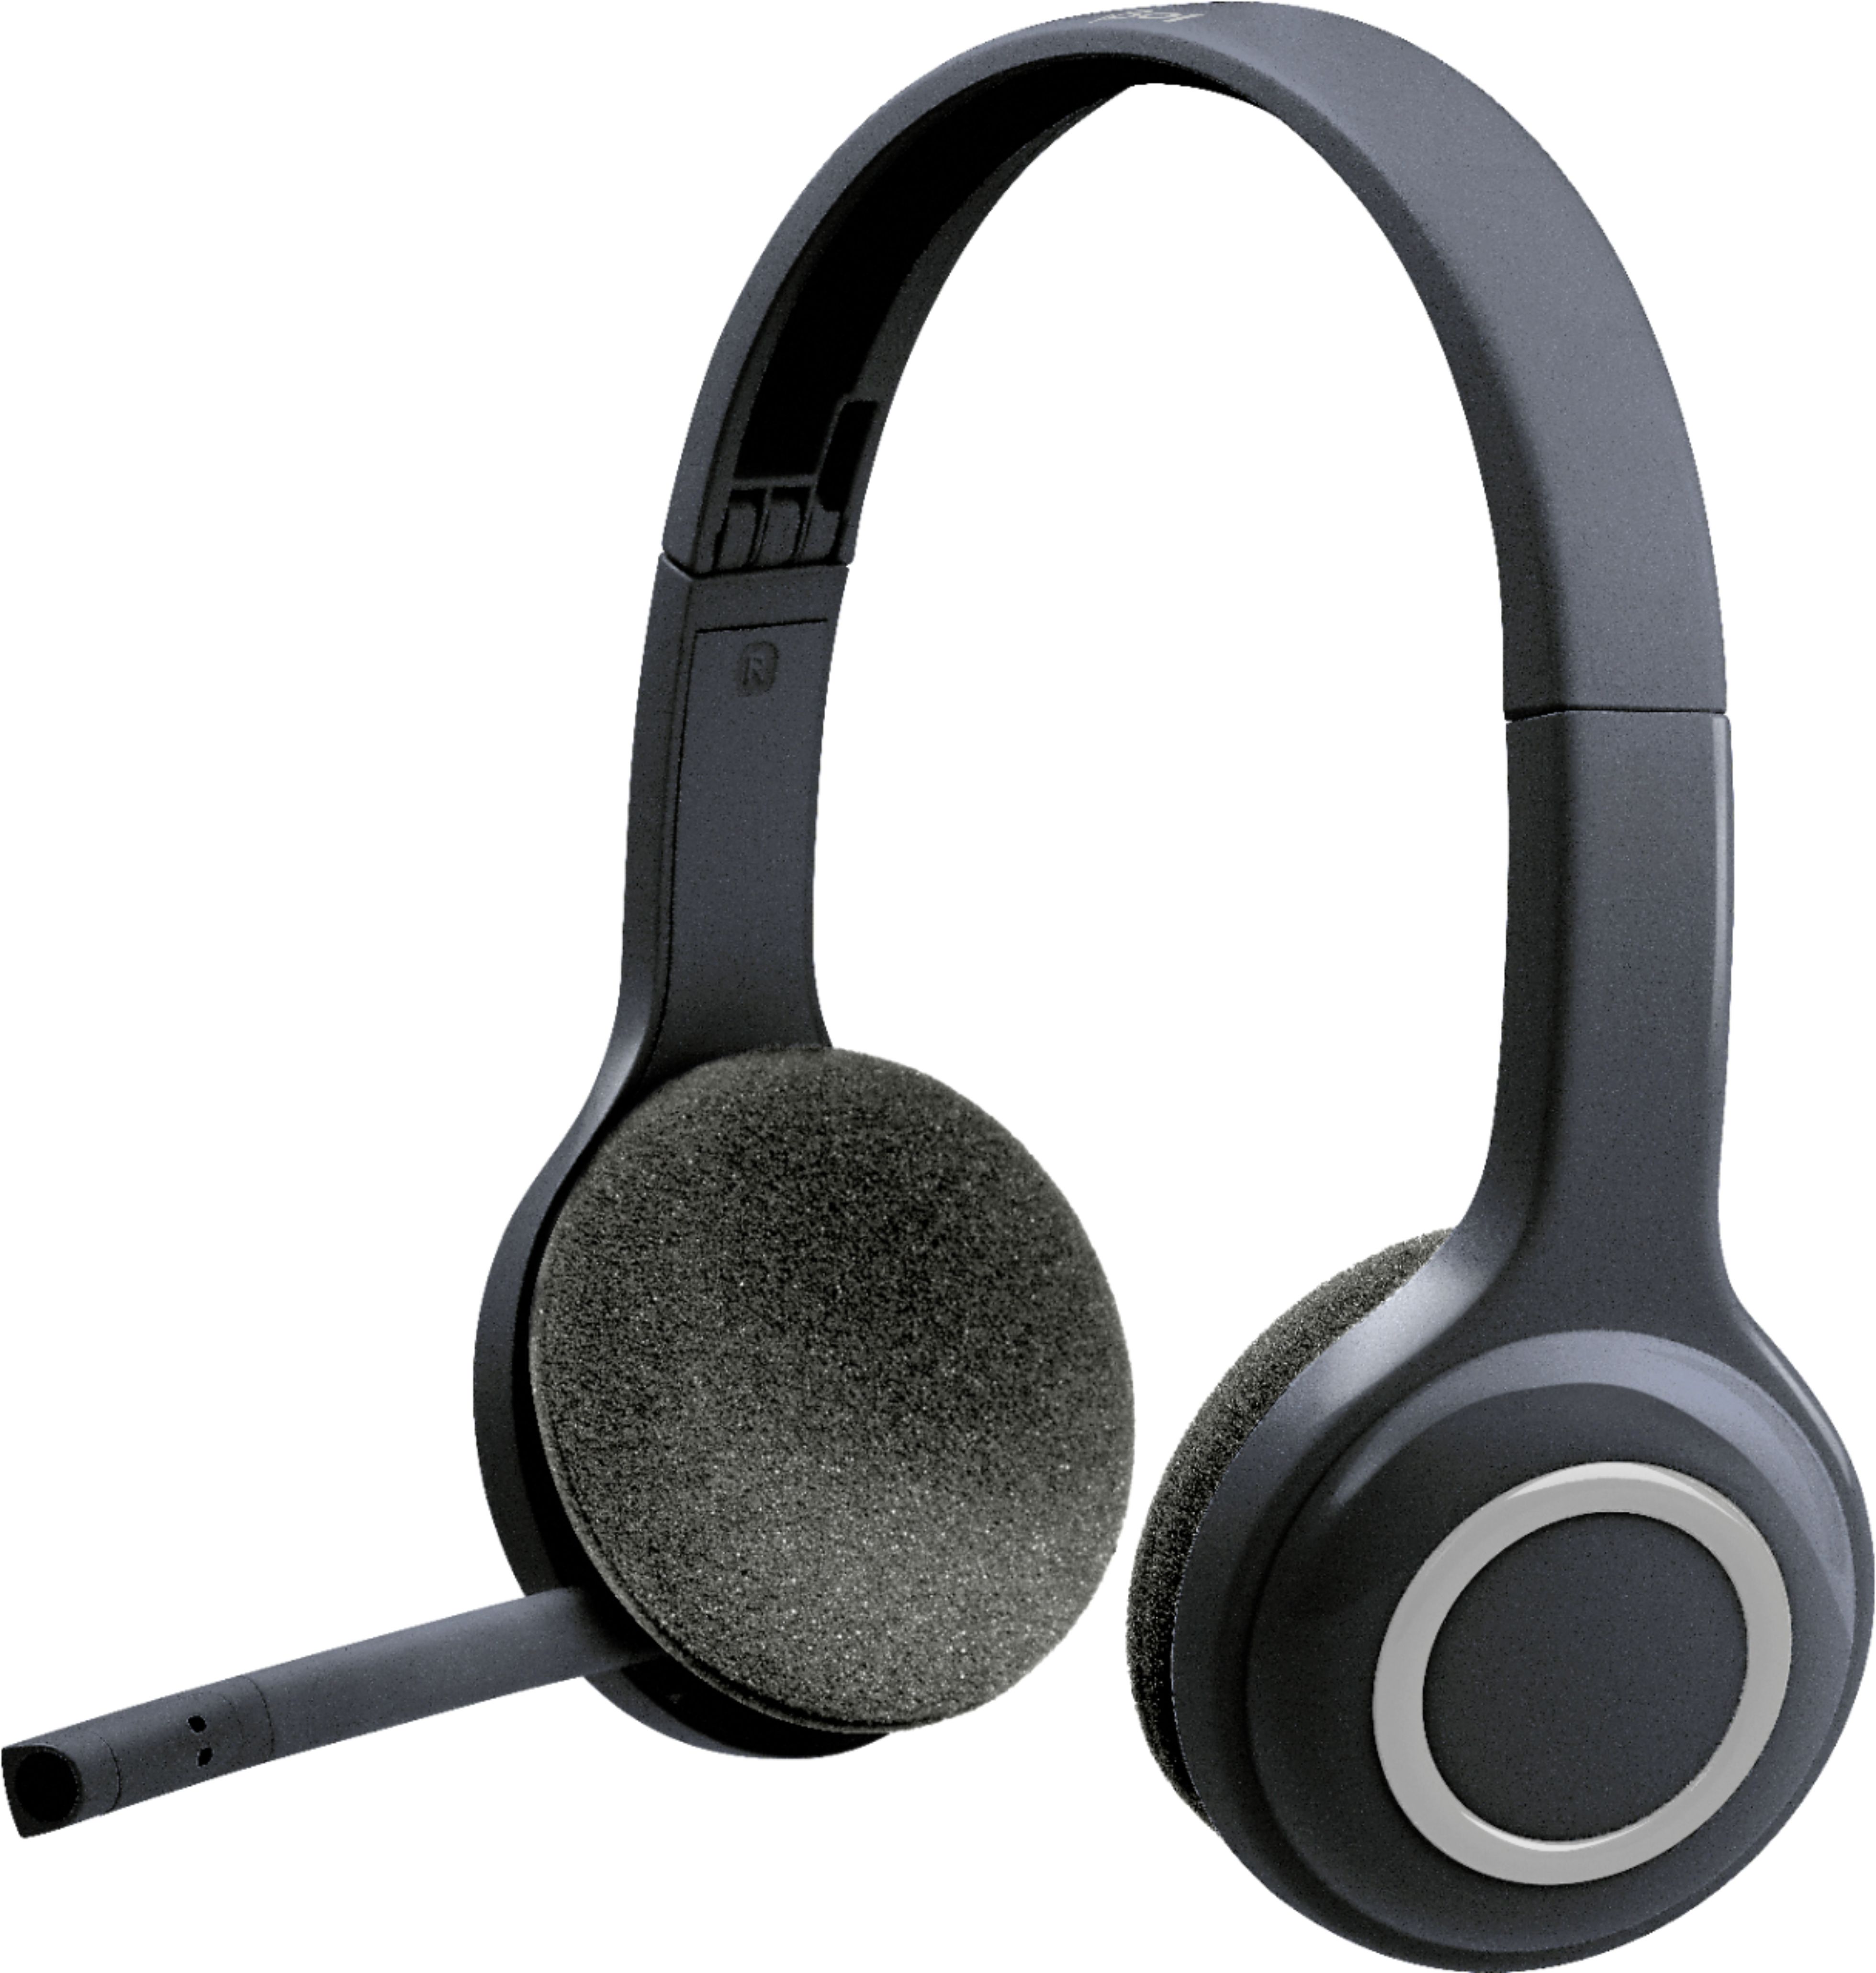 Best Buy: H600 RF Wireless On-Ear Headset Black 981-000341